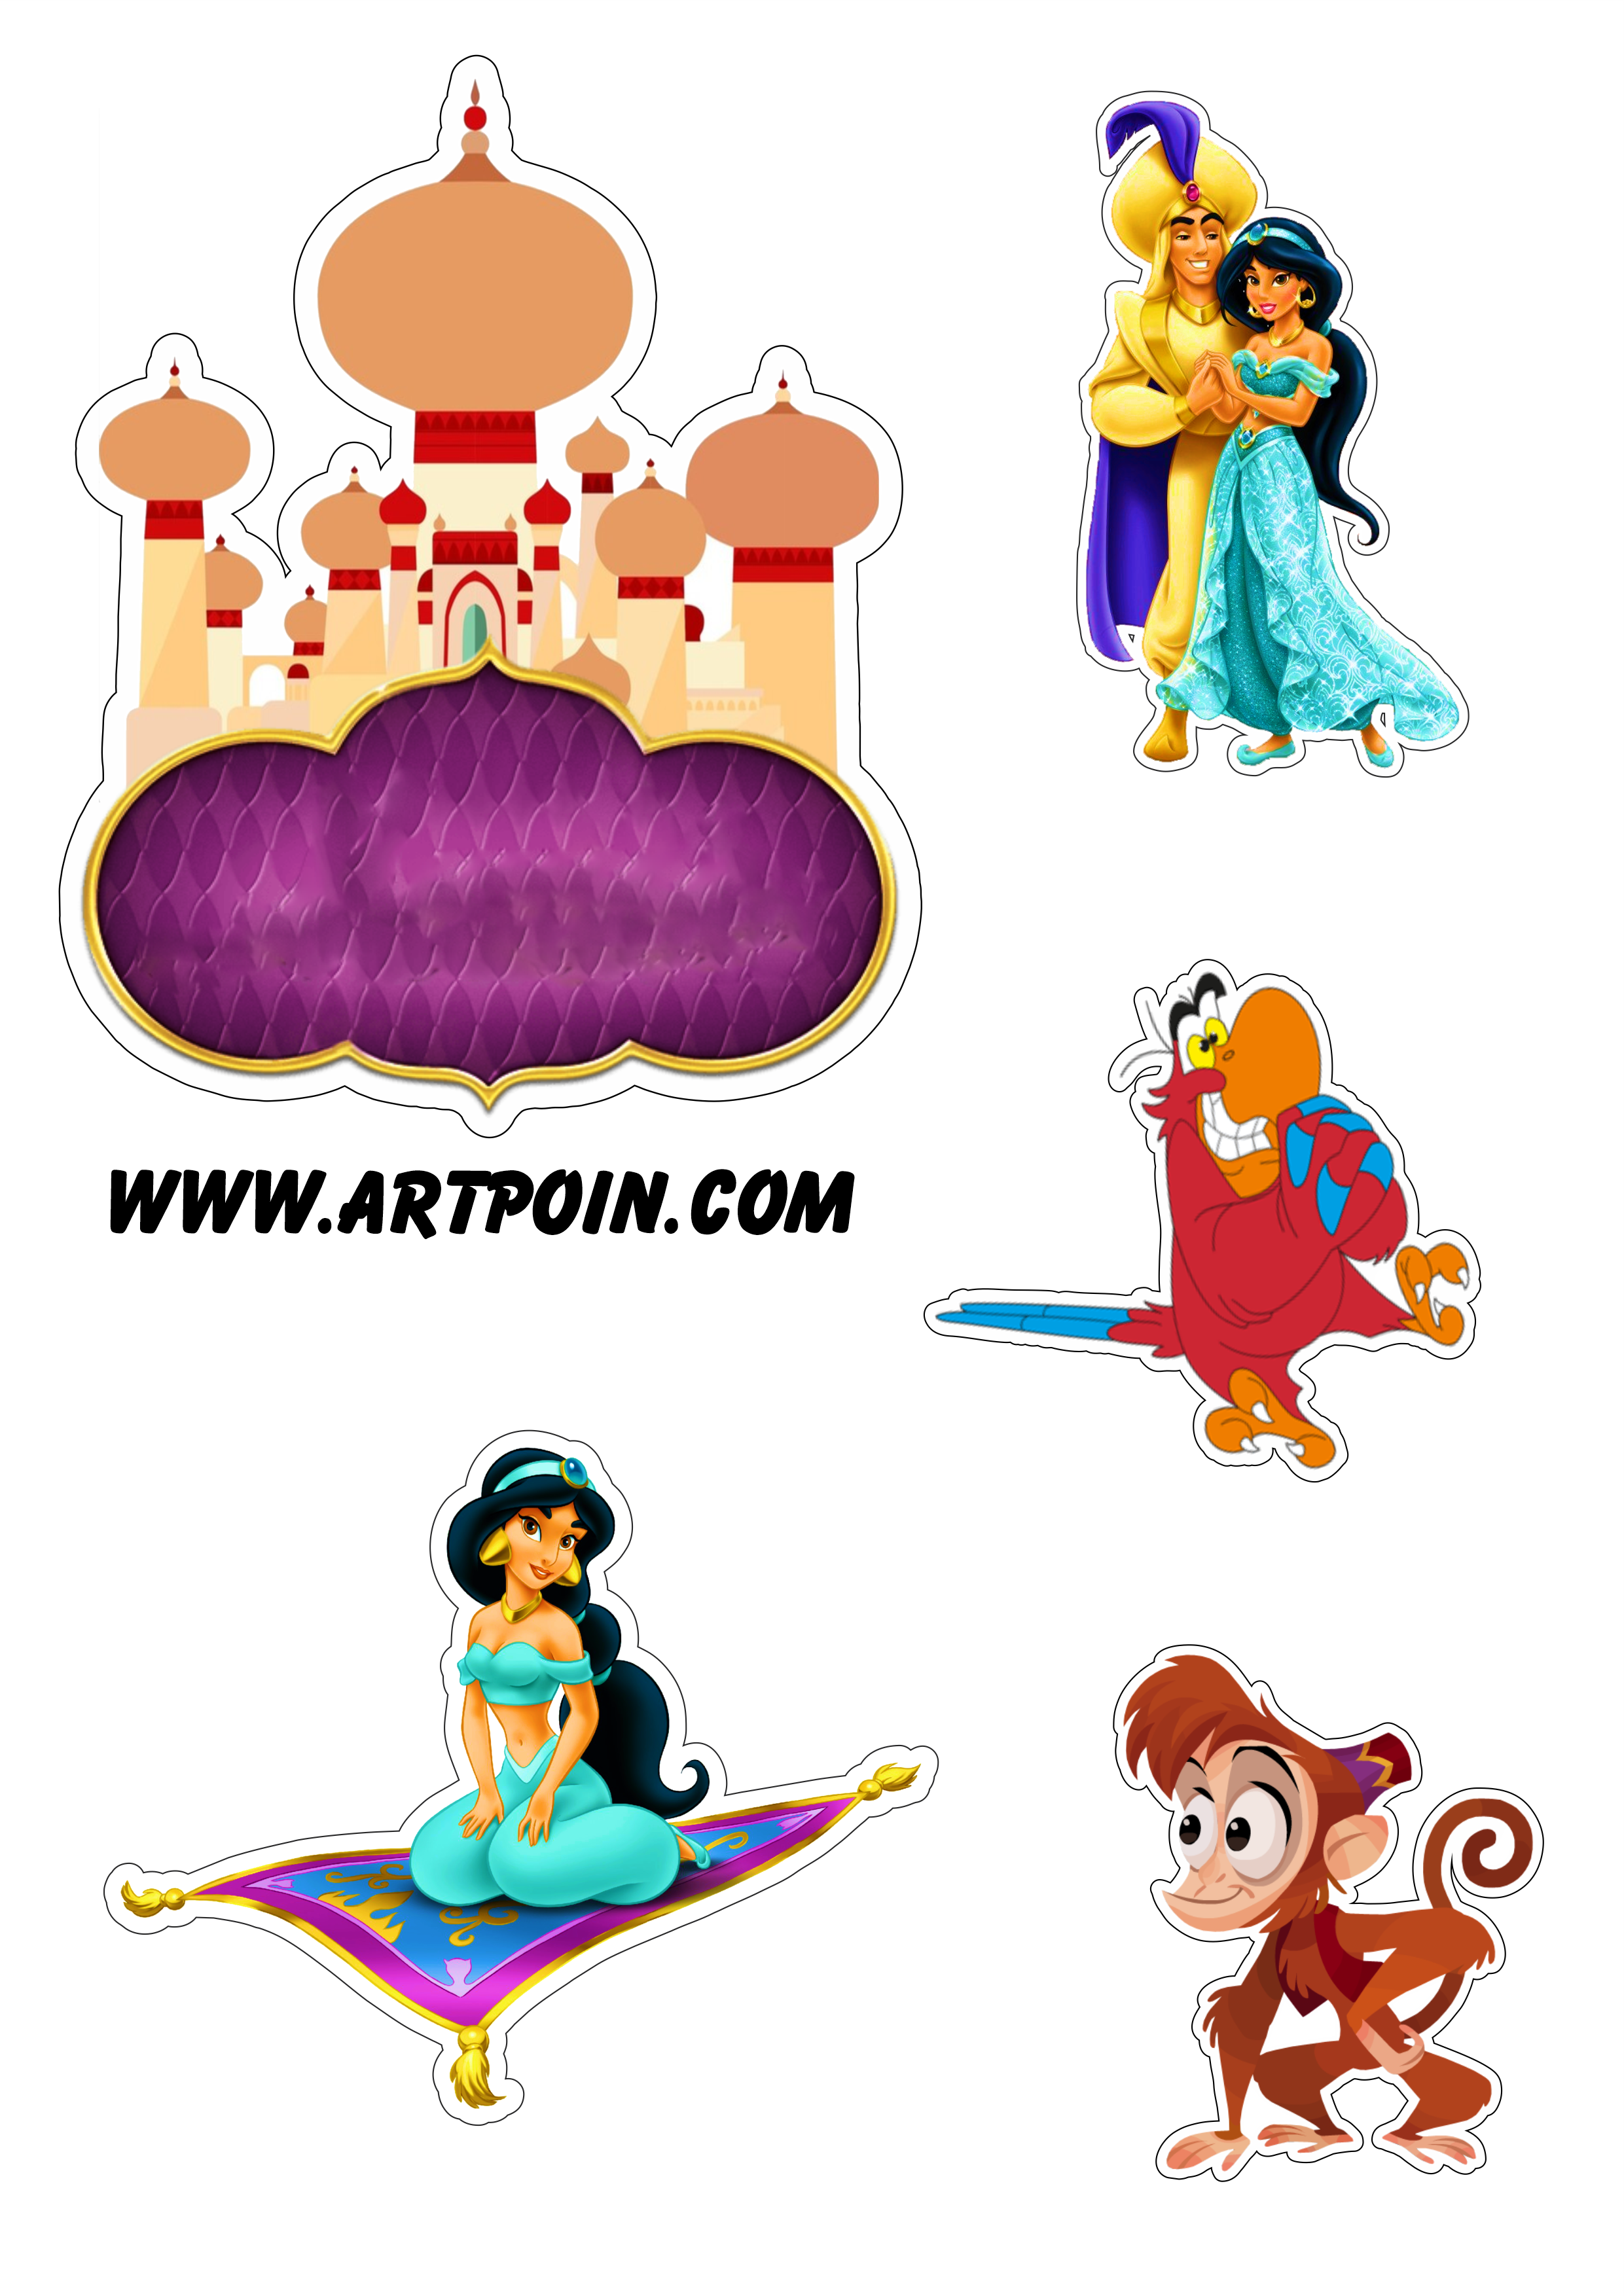 Aladdin desenho infantil macaco Abu fundo transparente ilustração